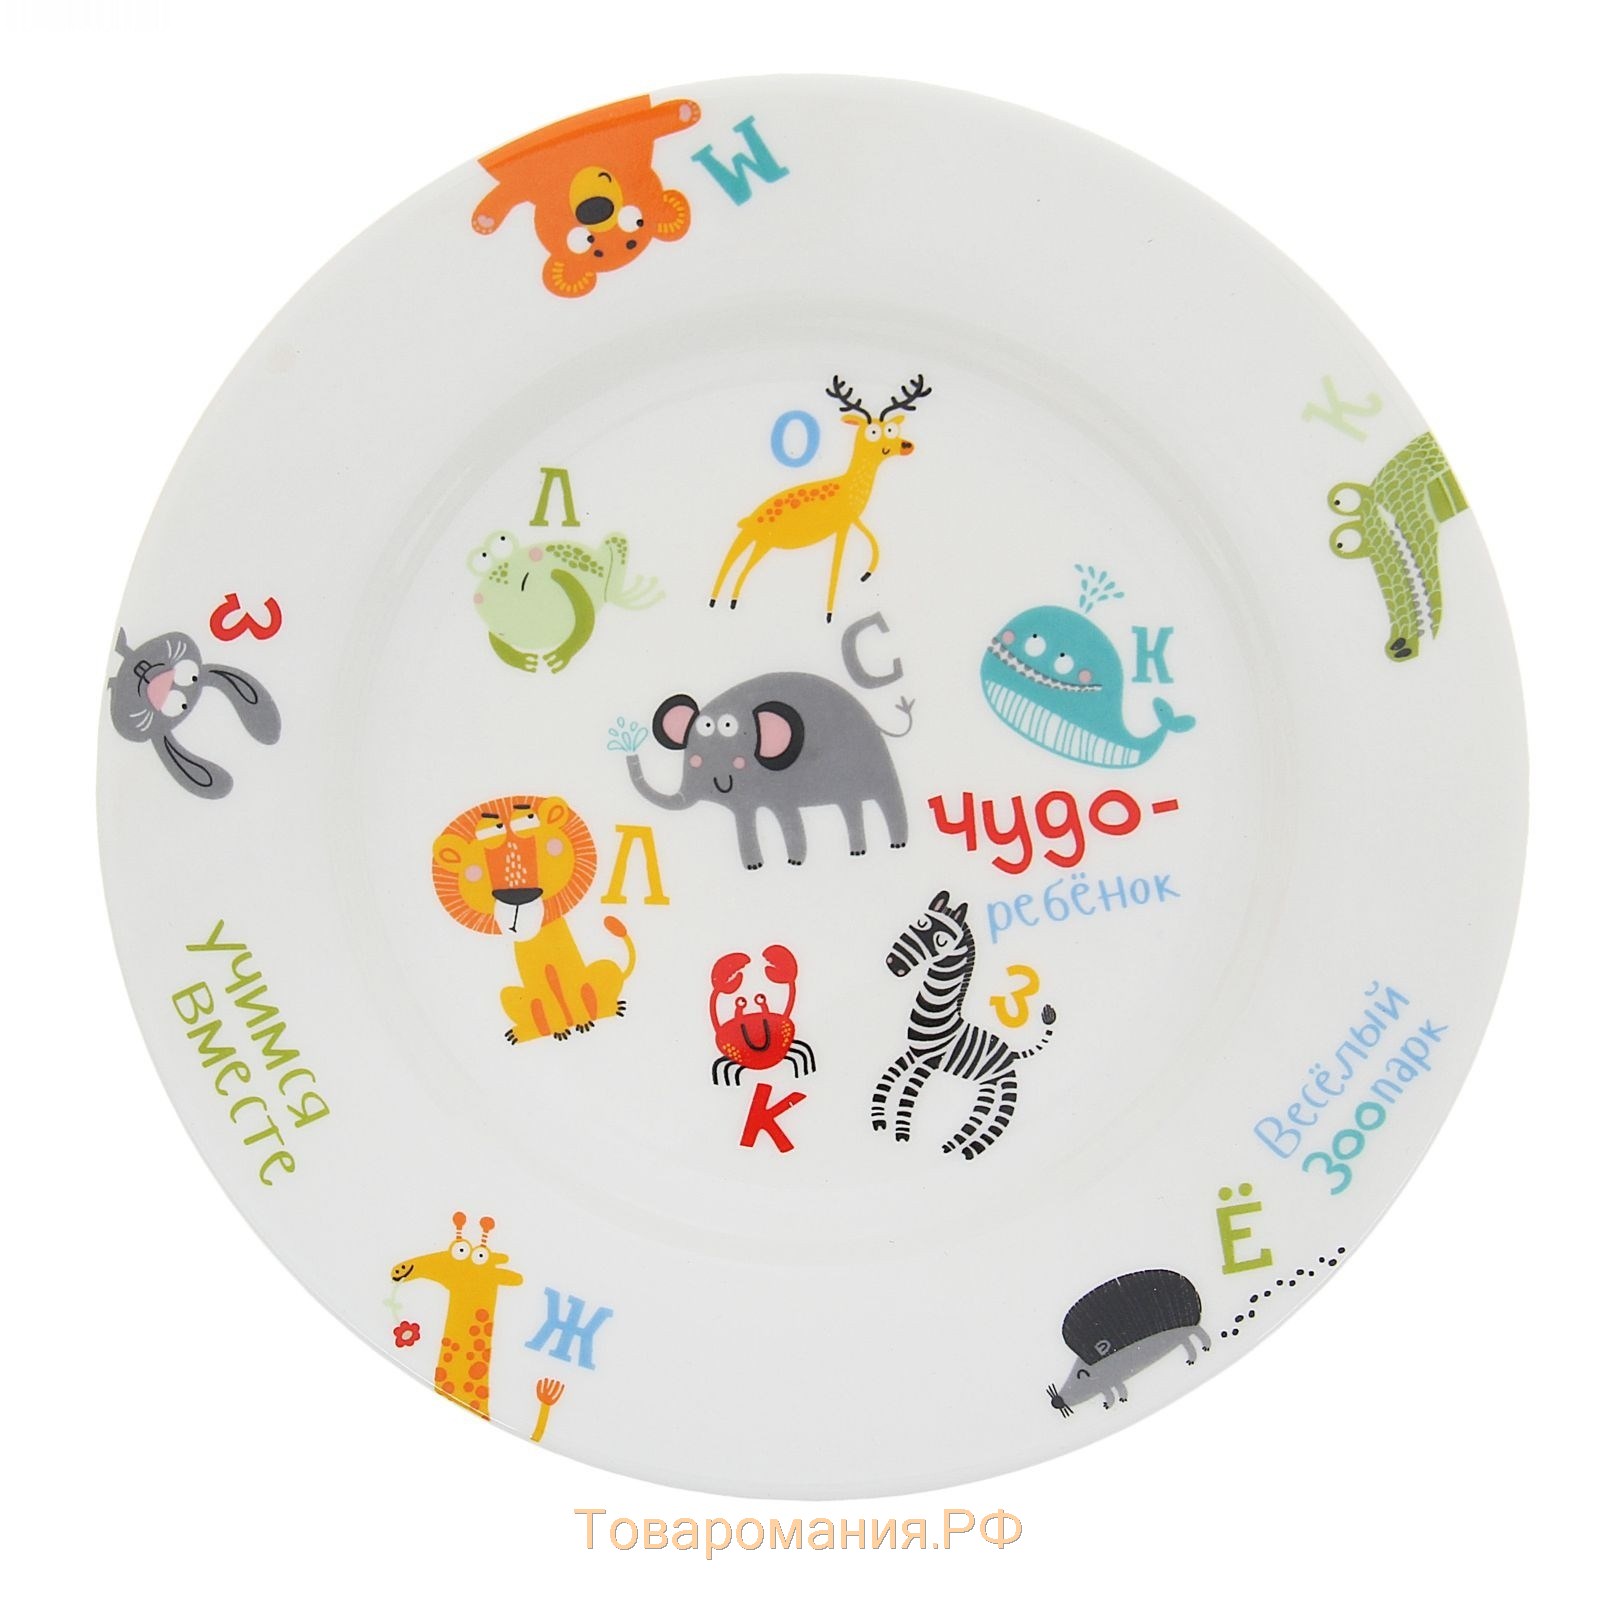 Набор детской посуды "Чудо-ребенок", 3 предмета, тарелка, салатник, кружка